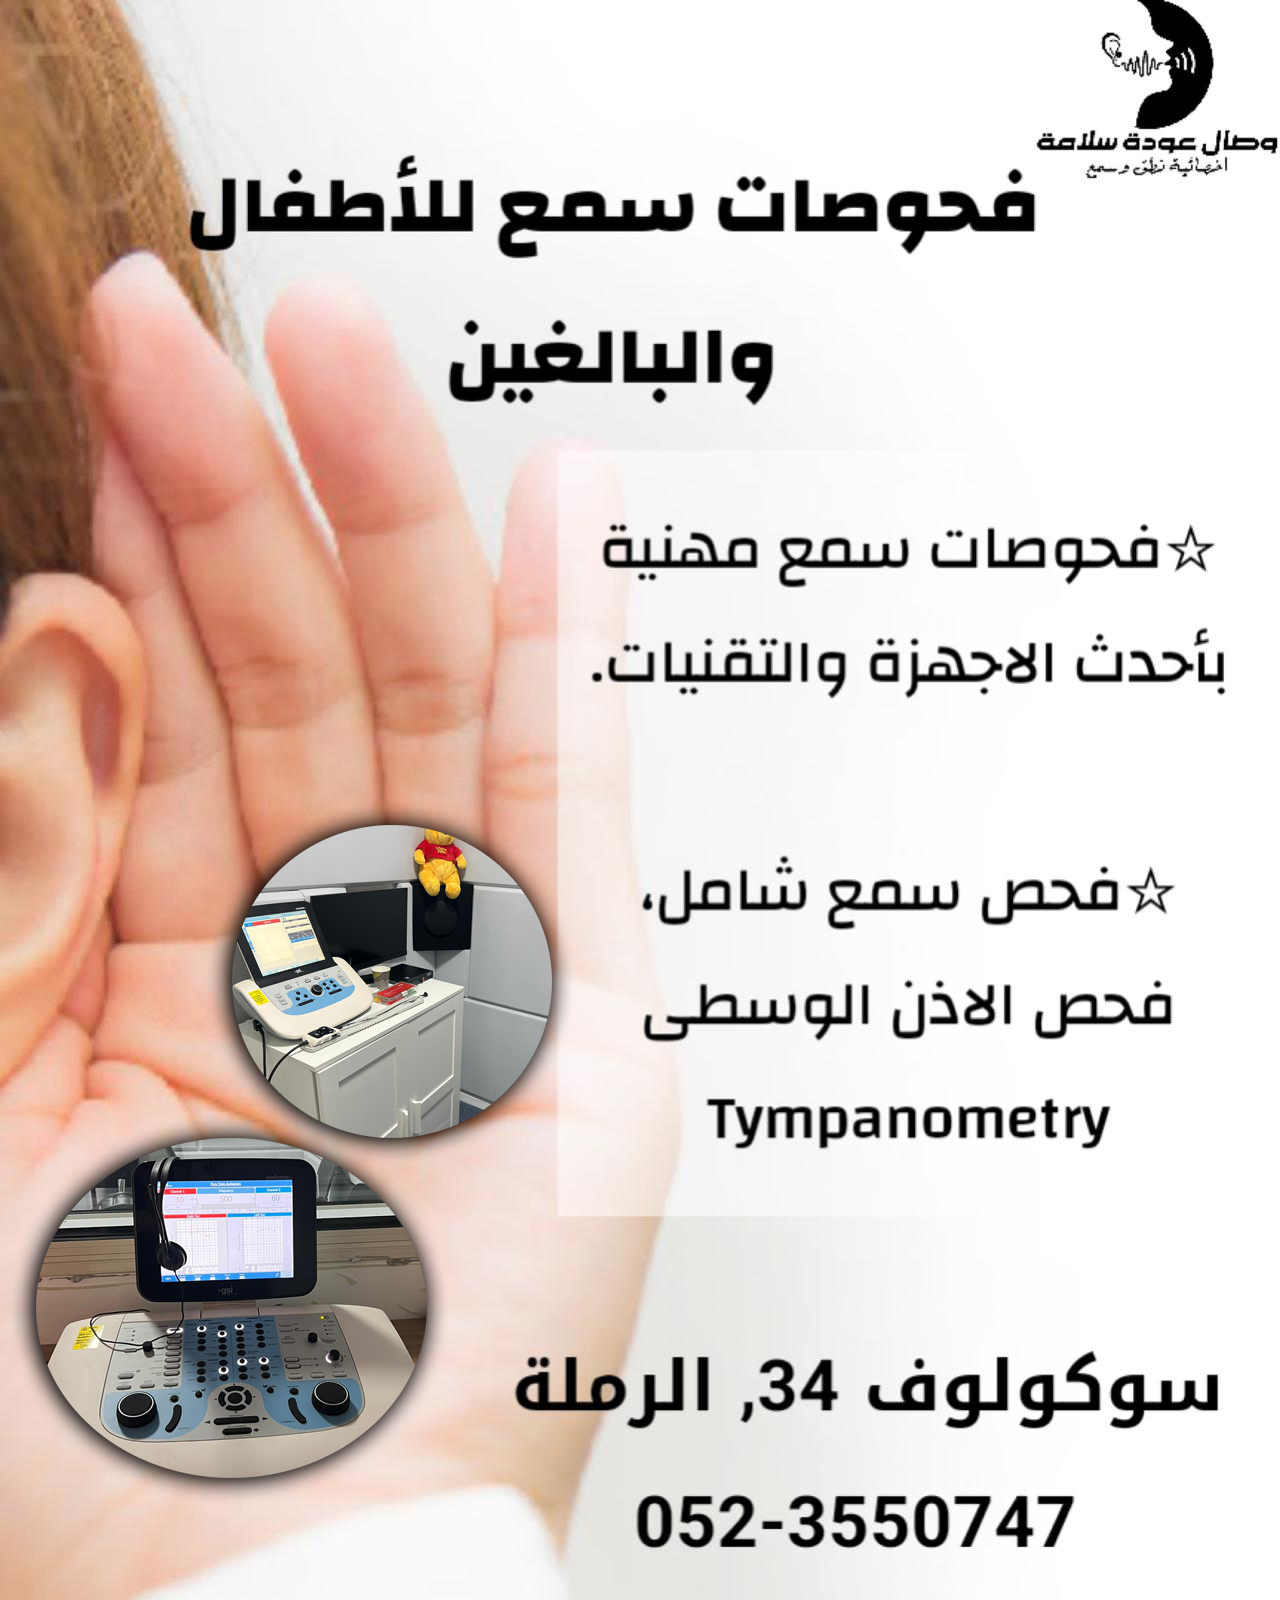  الضوضاء المستمرة سبب لمشاكل السمع .. افحصوا الآن مع الأخصائية وصال سلامة